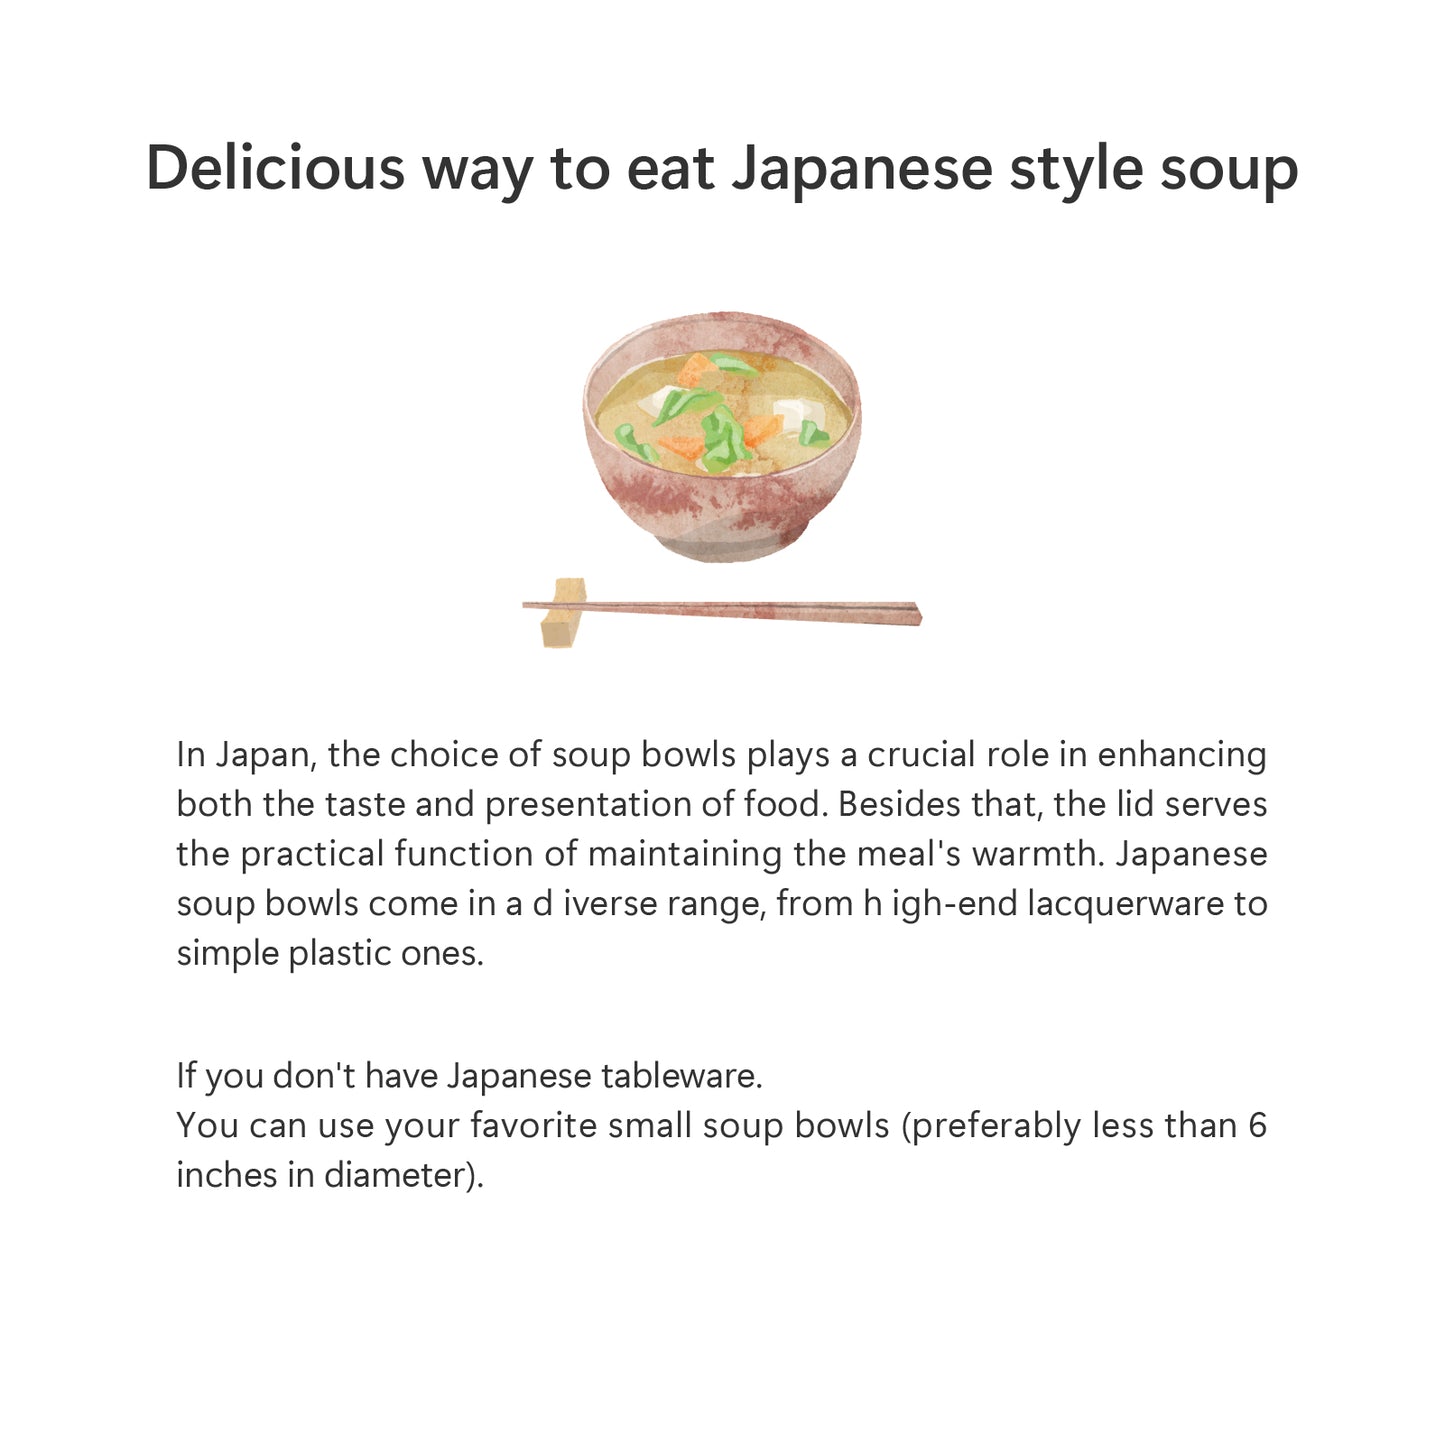 日本の伝統的な3つの風味のスープ(松竹梅)の山中塗夫婦椀のセット